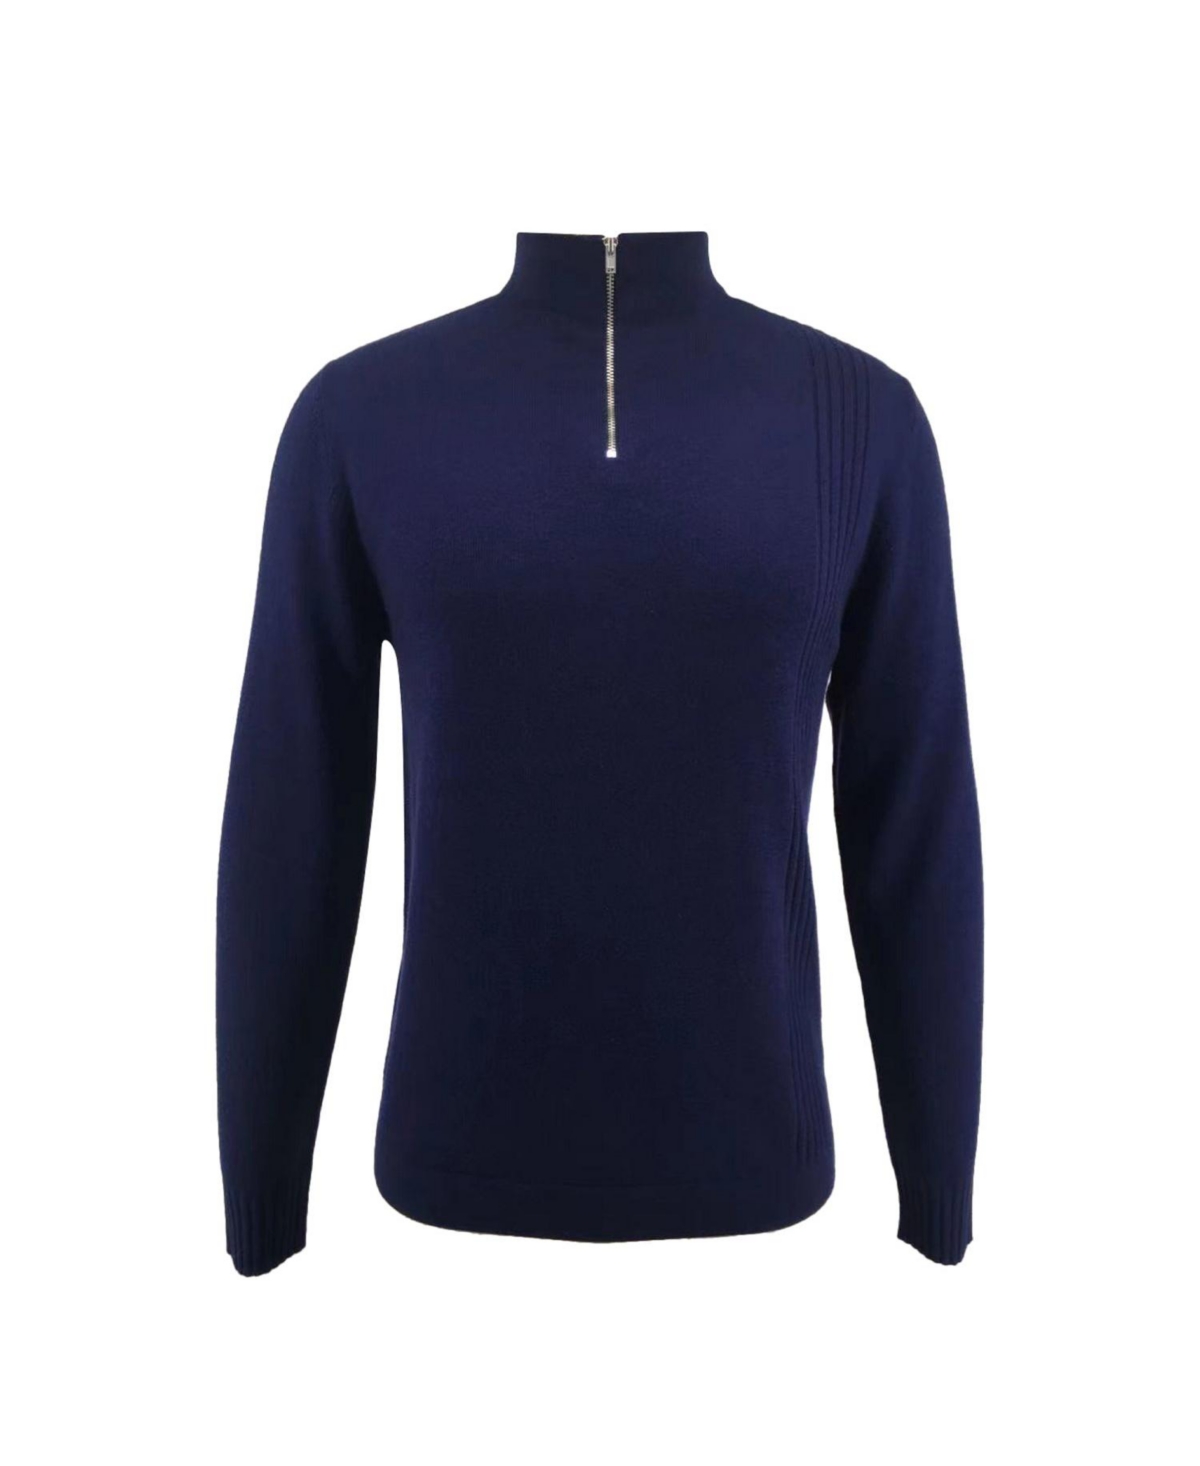 Bellemere Men's Merino Half-Zip Pullover Sweater - Blue